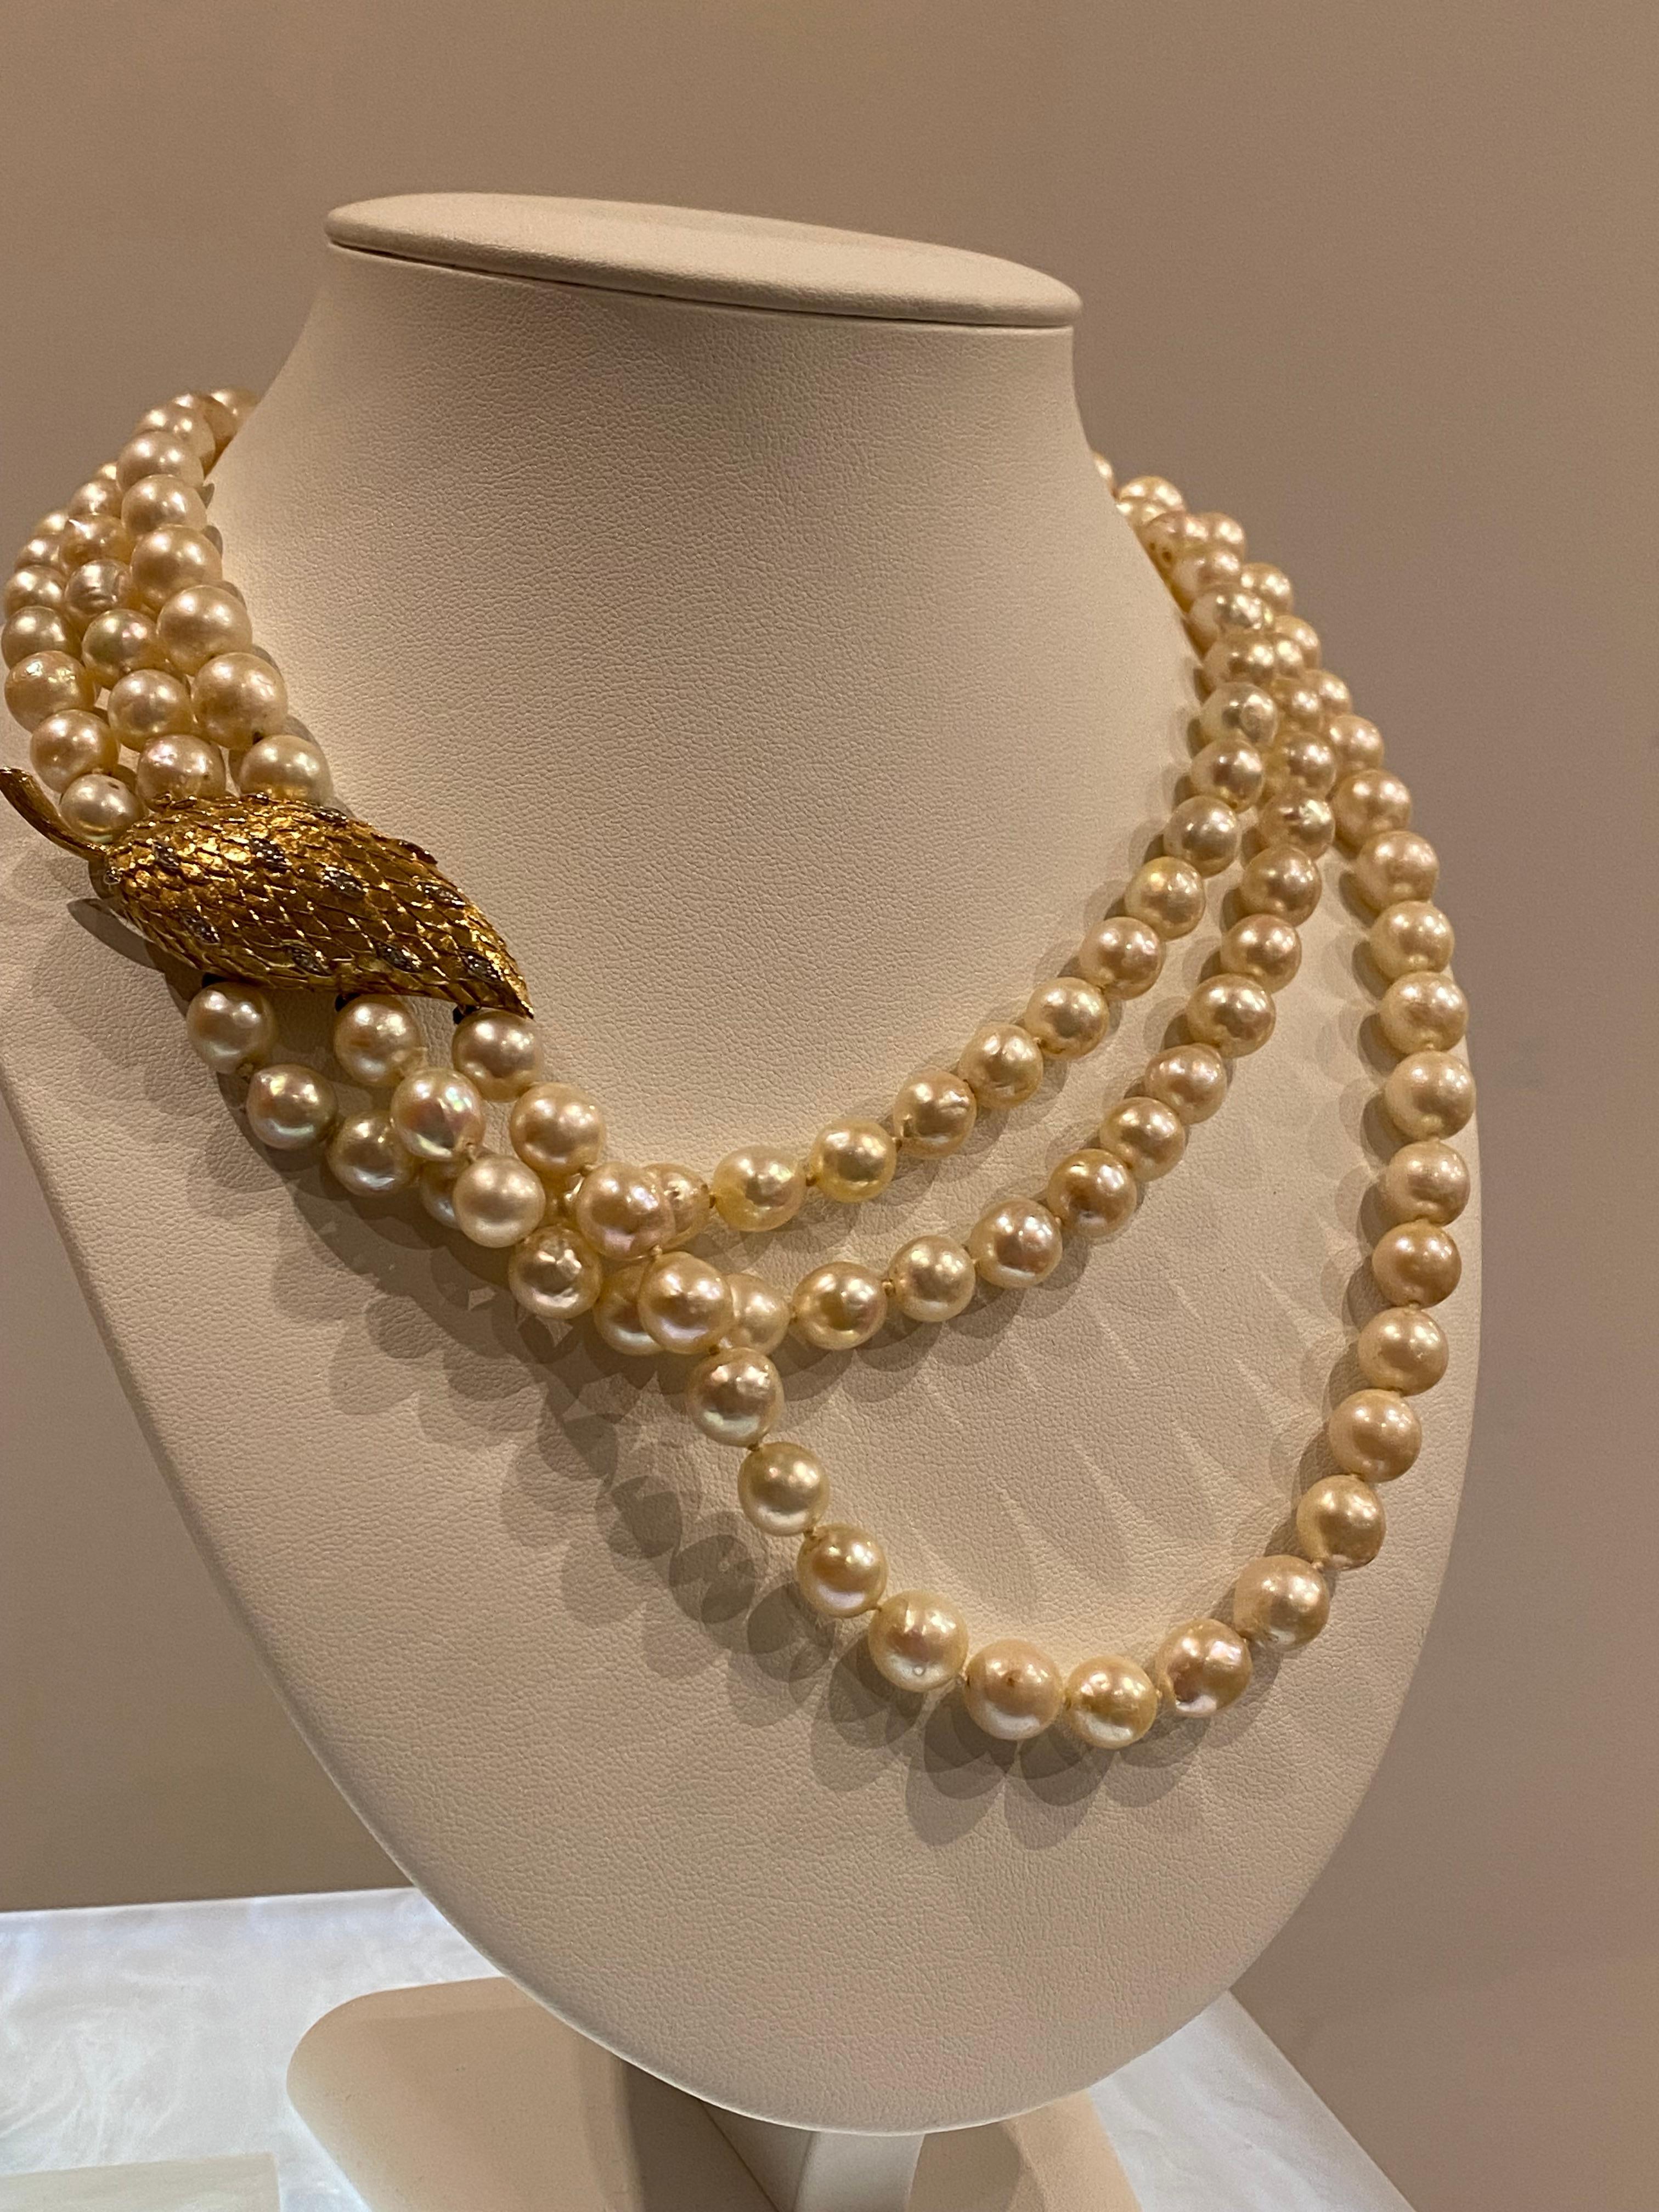 Retro Magnificent Three-Strand Pearl Necklace (Elizabeth II Style) Gold Diamond Clasp